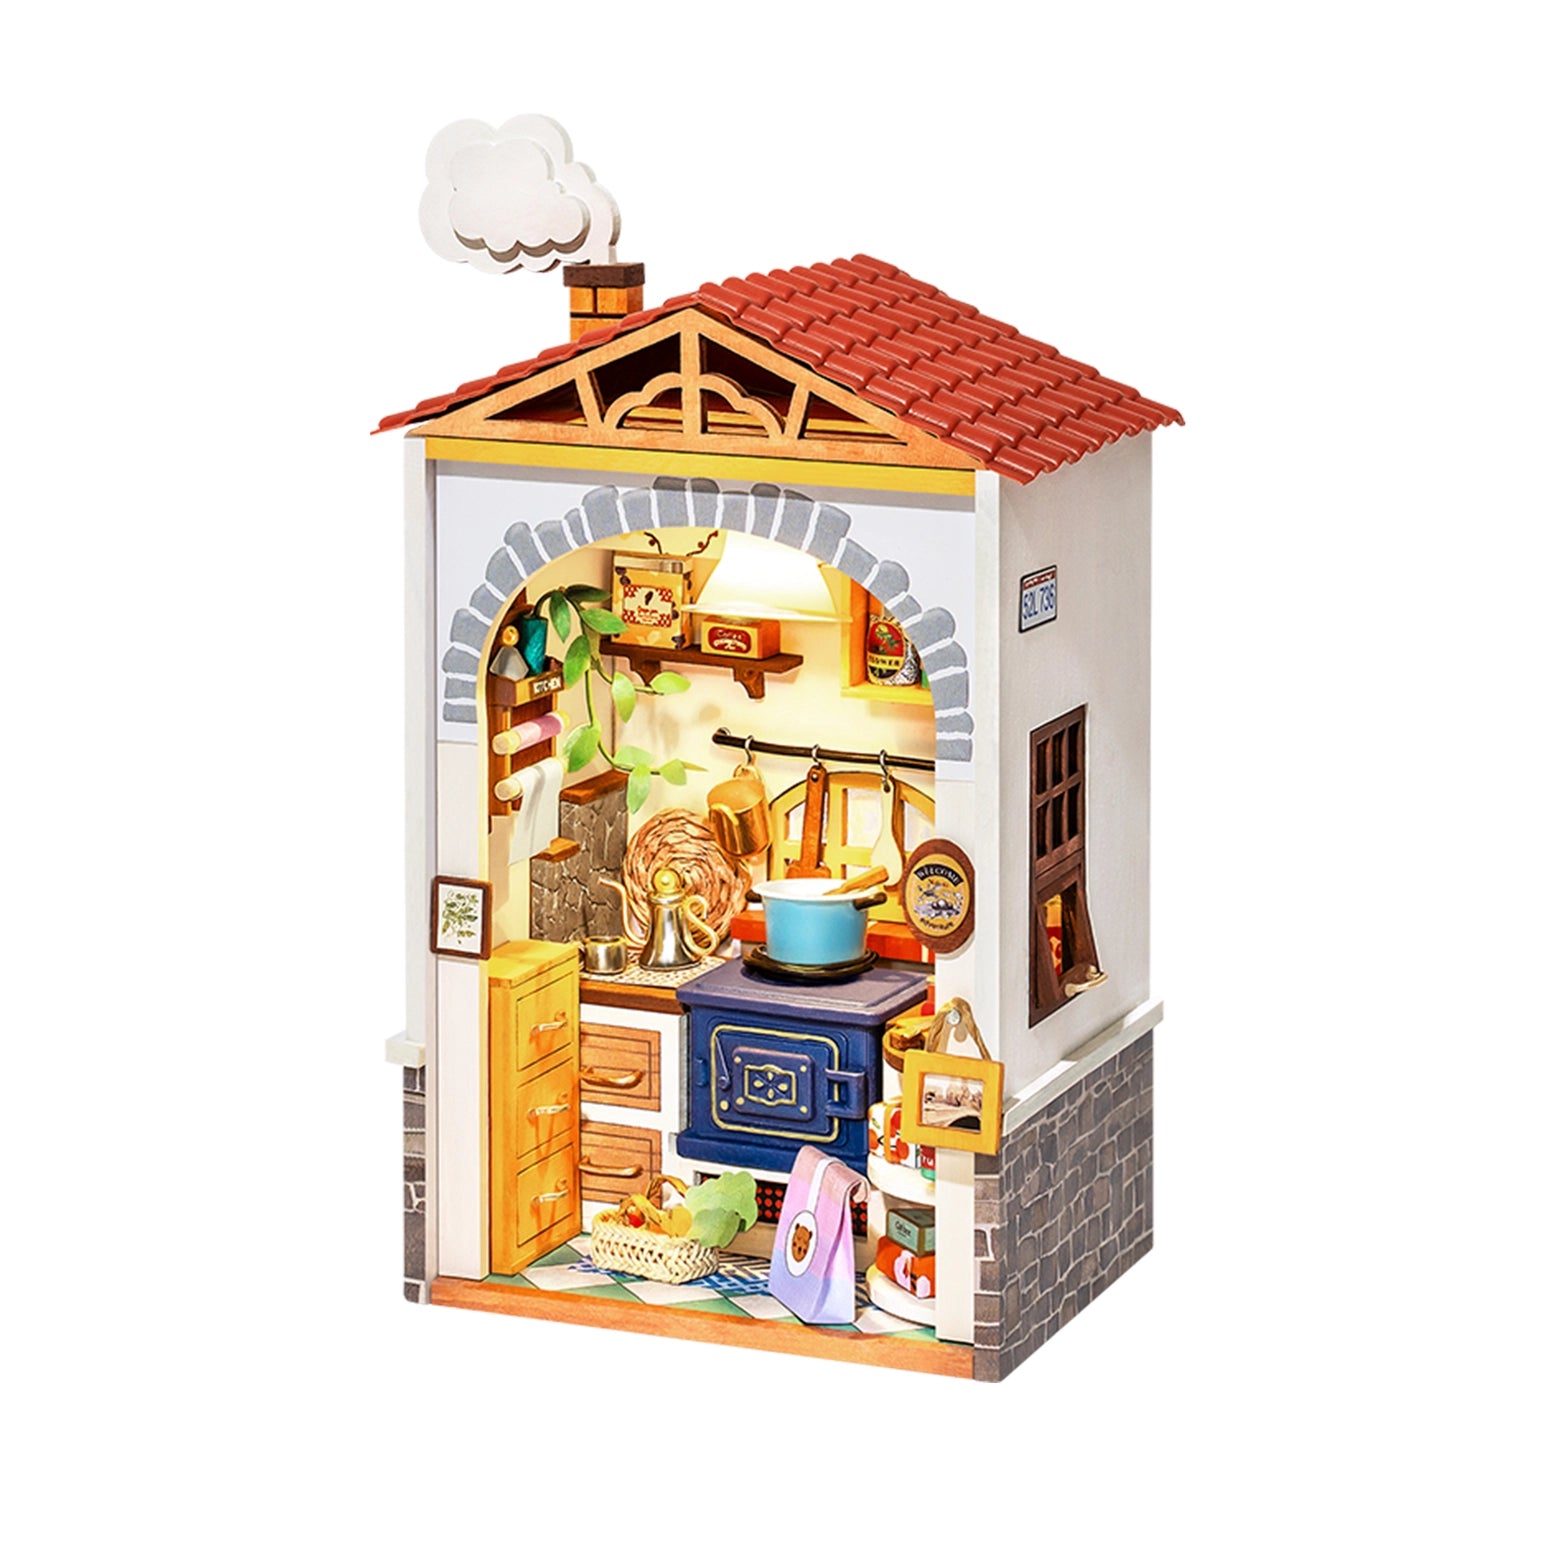 DS011 Diy Miniature House Kit: Flavor Kitchen